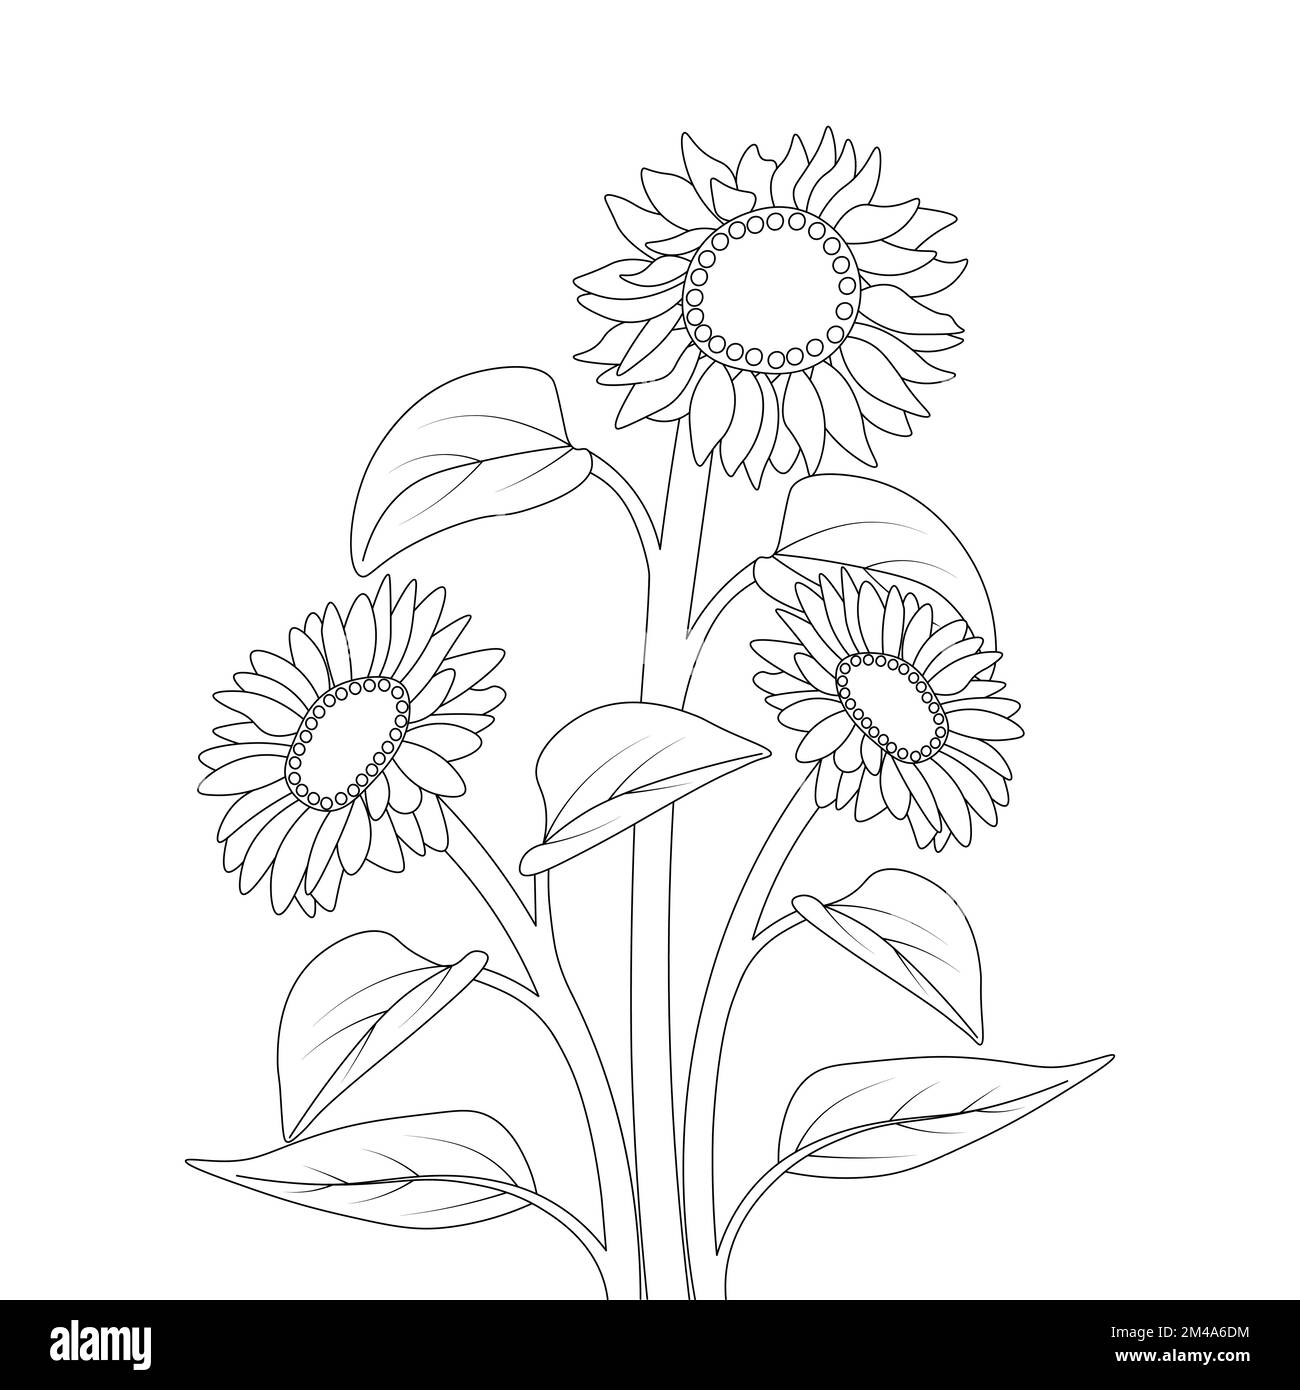 Kinder Sonnenblumen-Malstift Zeichnung mit Vektordesign und Bleistiftskizze Stock Vektor